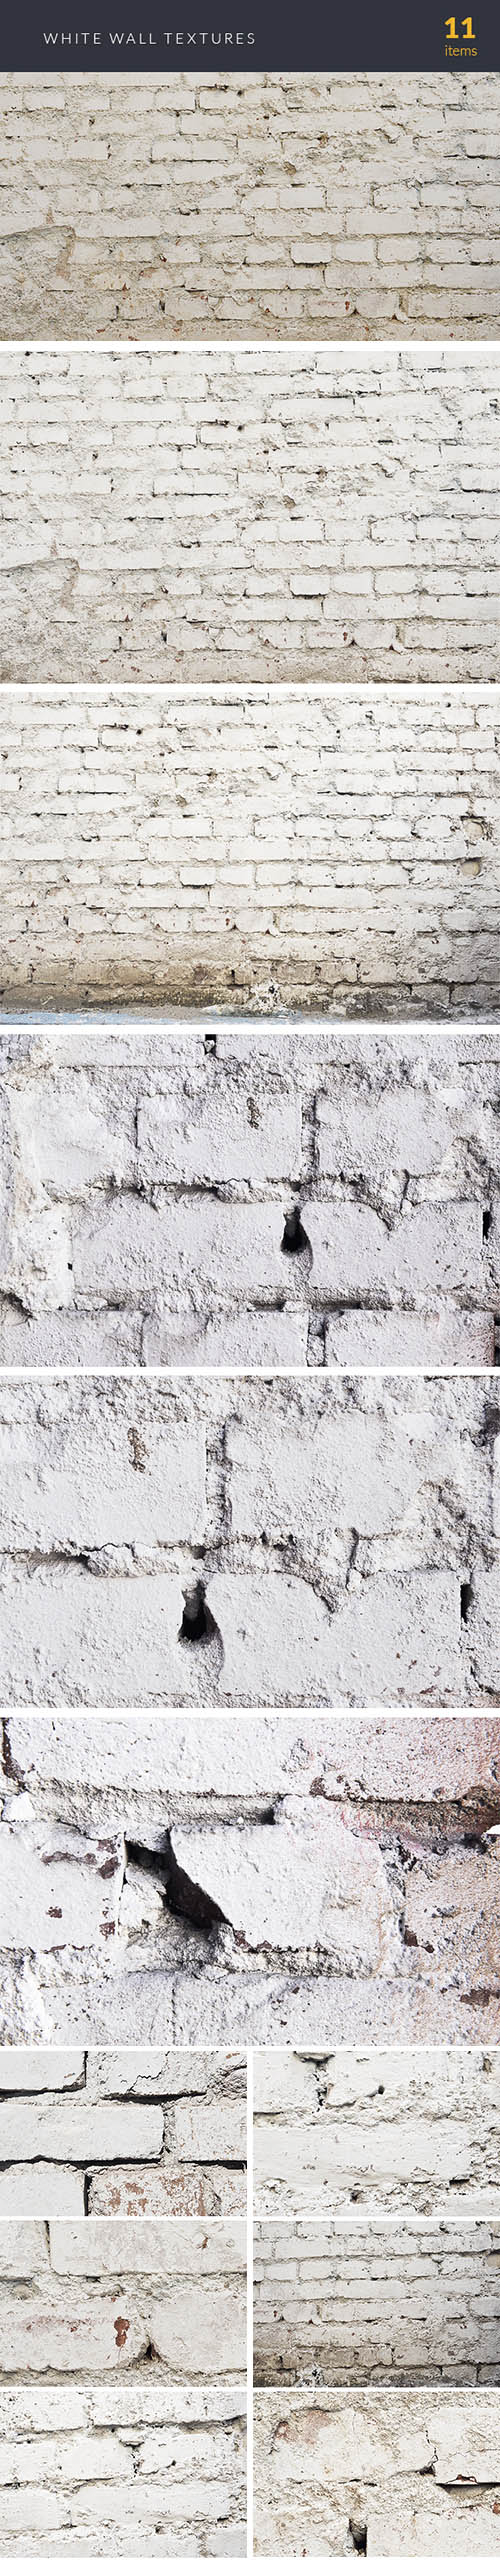 White Wall Textures Set 1